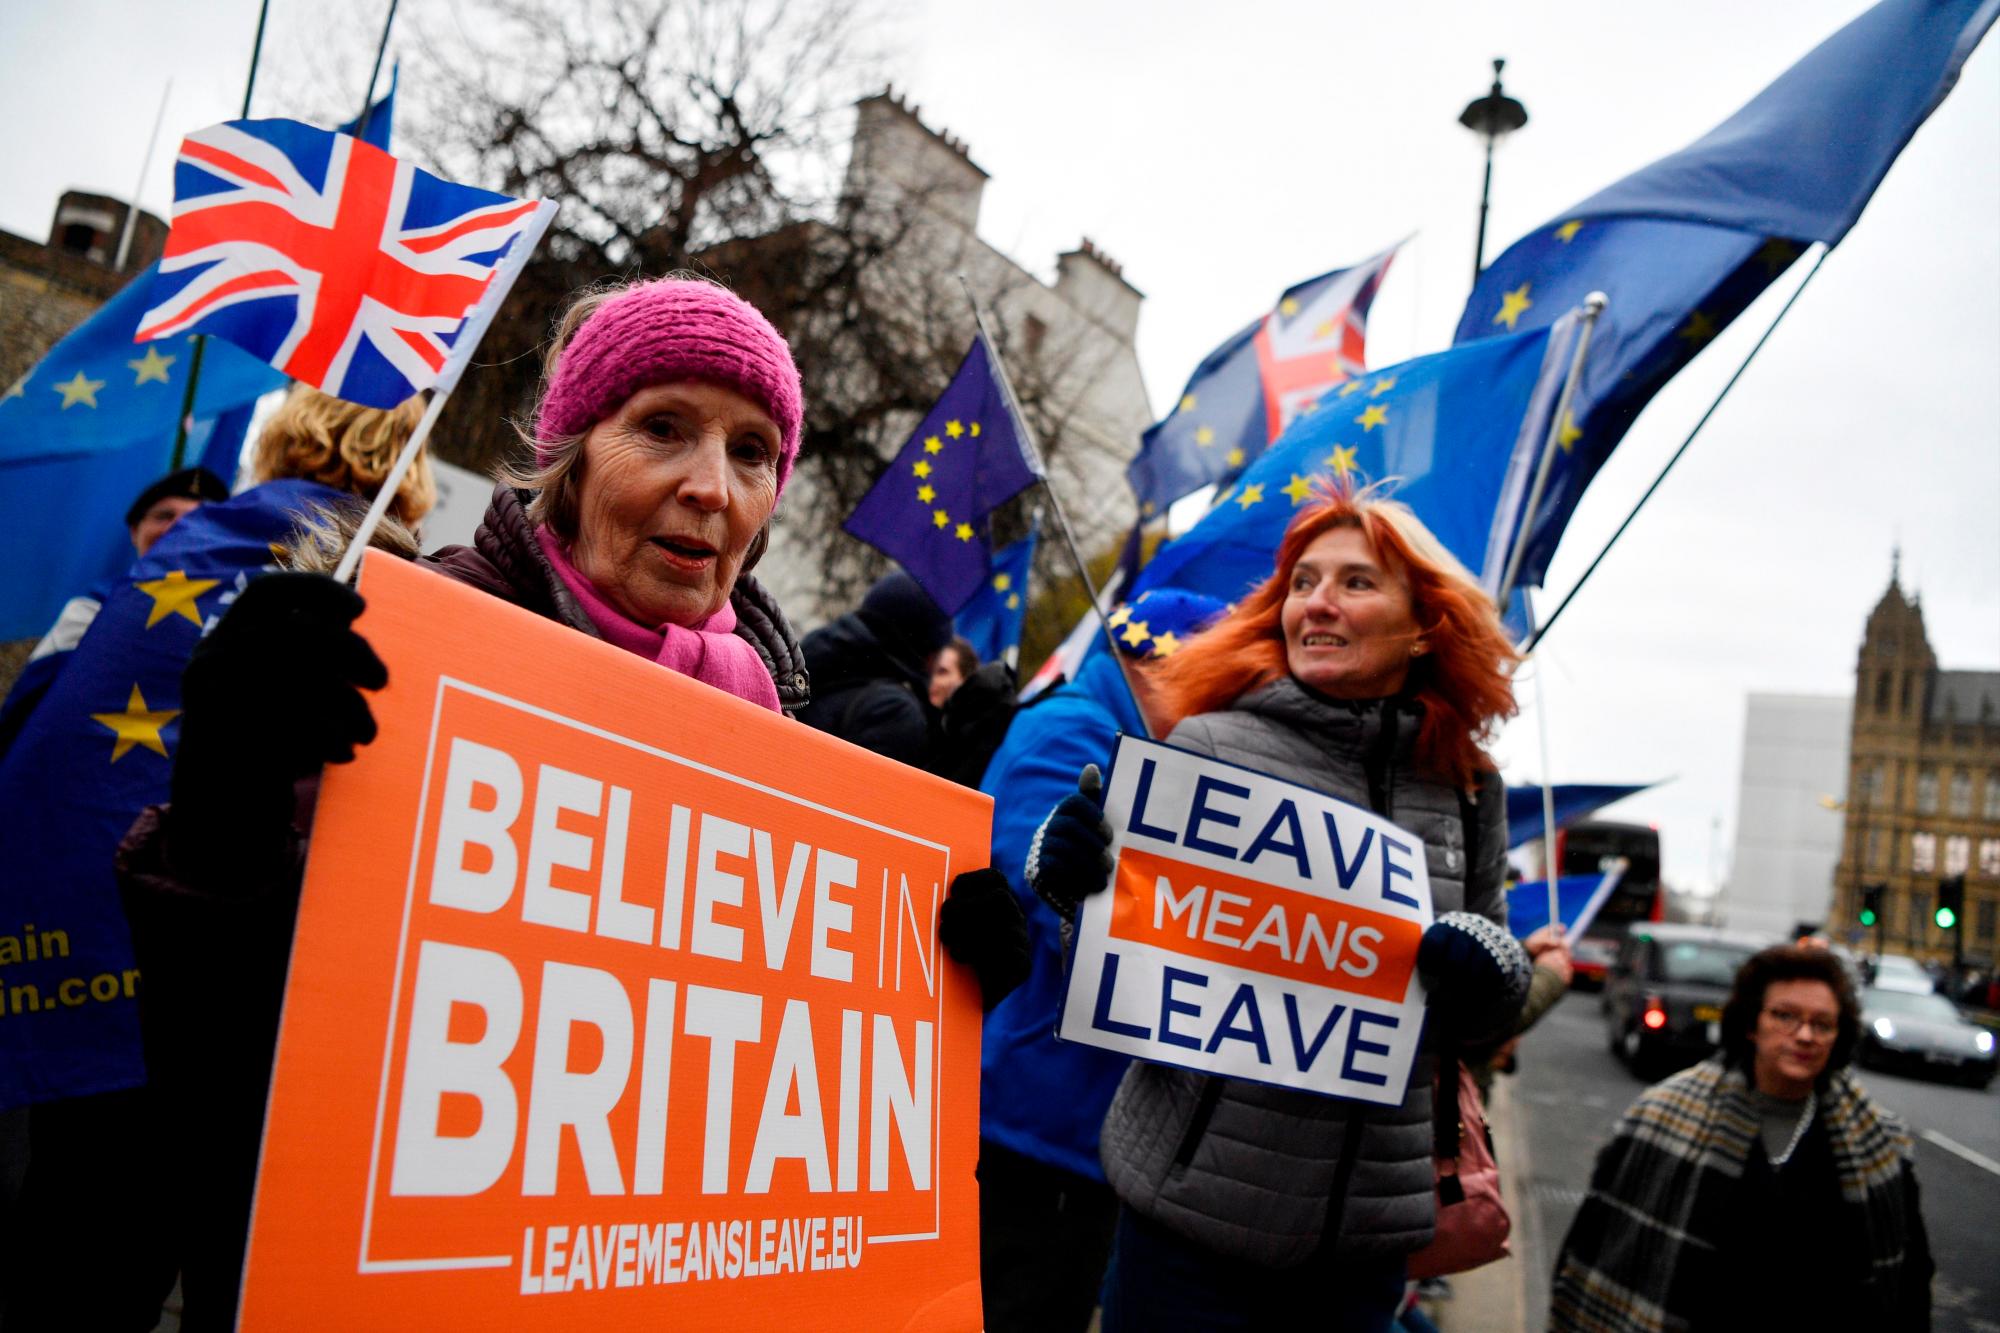 LONDRES (REINO UNIDO), 15/01/2019.- Manifestantes a favor del brexit se concentran ante el Parlamento en Londres, Reino Unido, hoy, 15 de enero de 2019. La Cámara de los Comunes celebra esta noche la crucial votación del acuerdo del brexit negociado entre Londres y Bruselas, dos años y medio después de que los británicos votasen en un referéndum a favor de salir de la Unión Europea (UE).